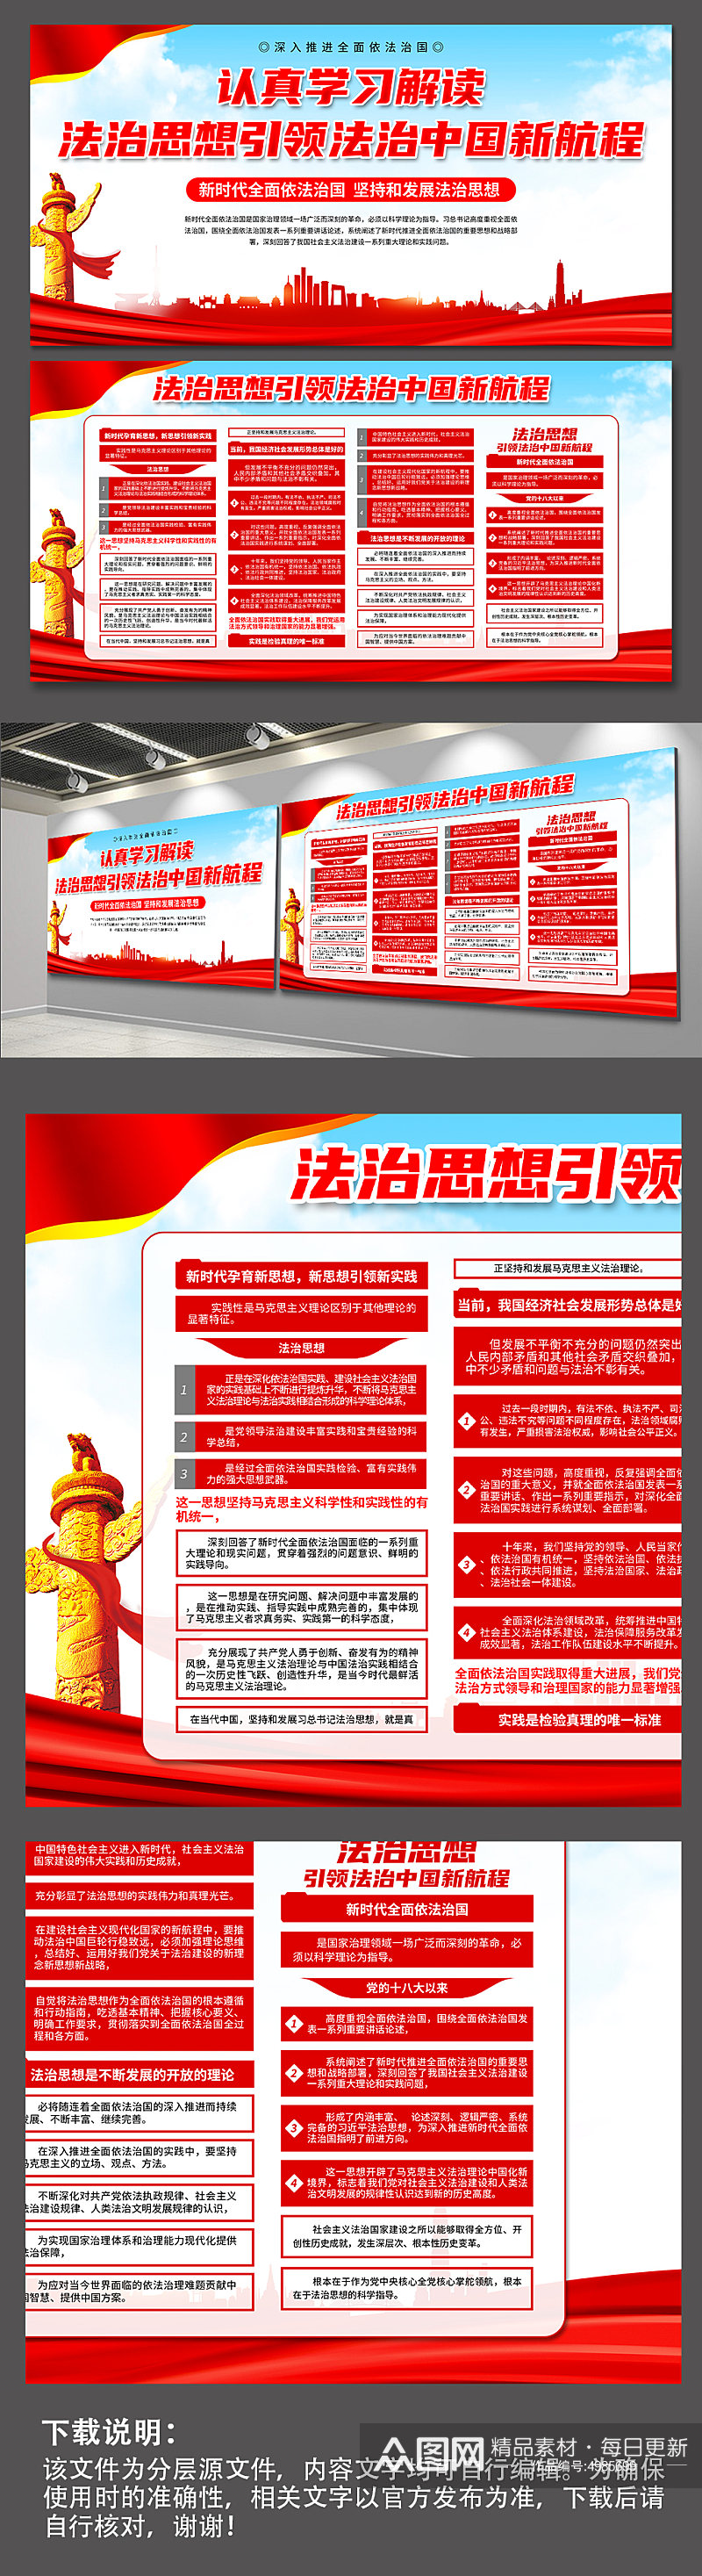 大气法治思想引领法治中国新航程党建展板素材